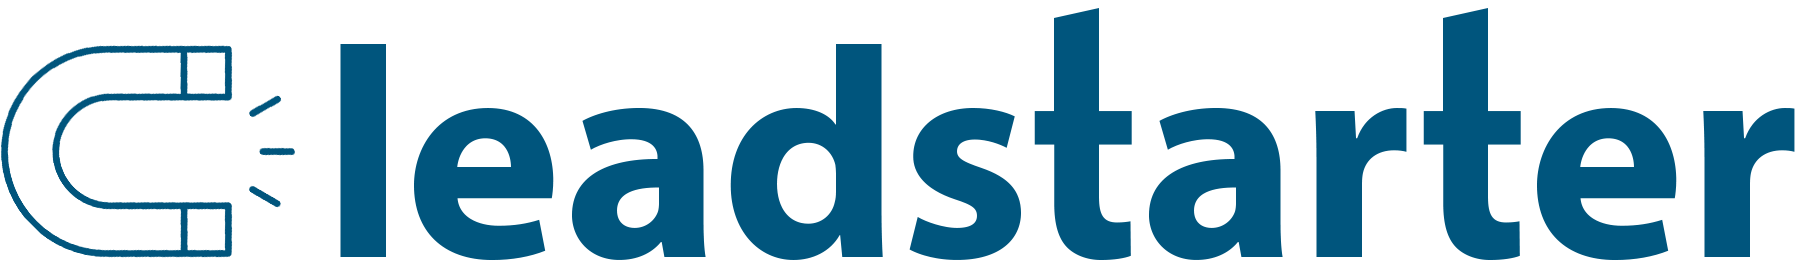 leadstarter logo